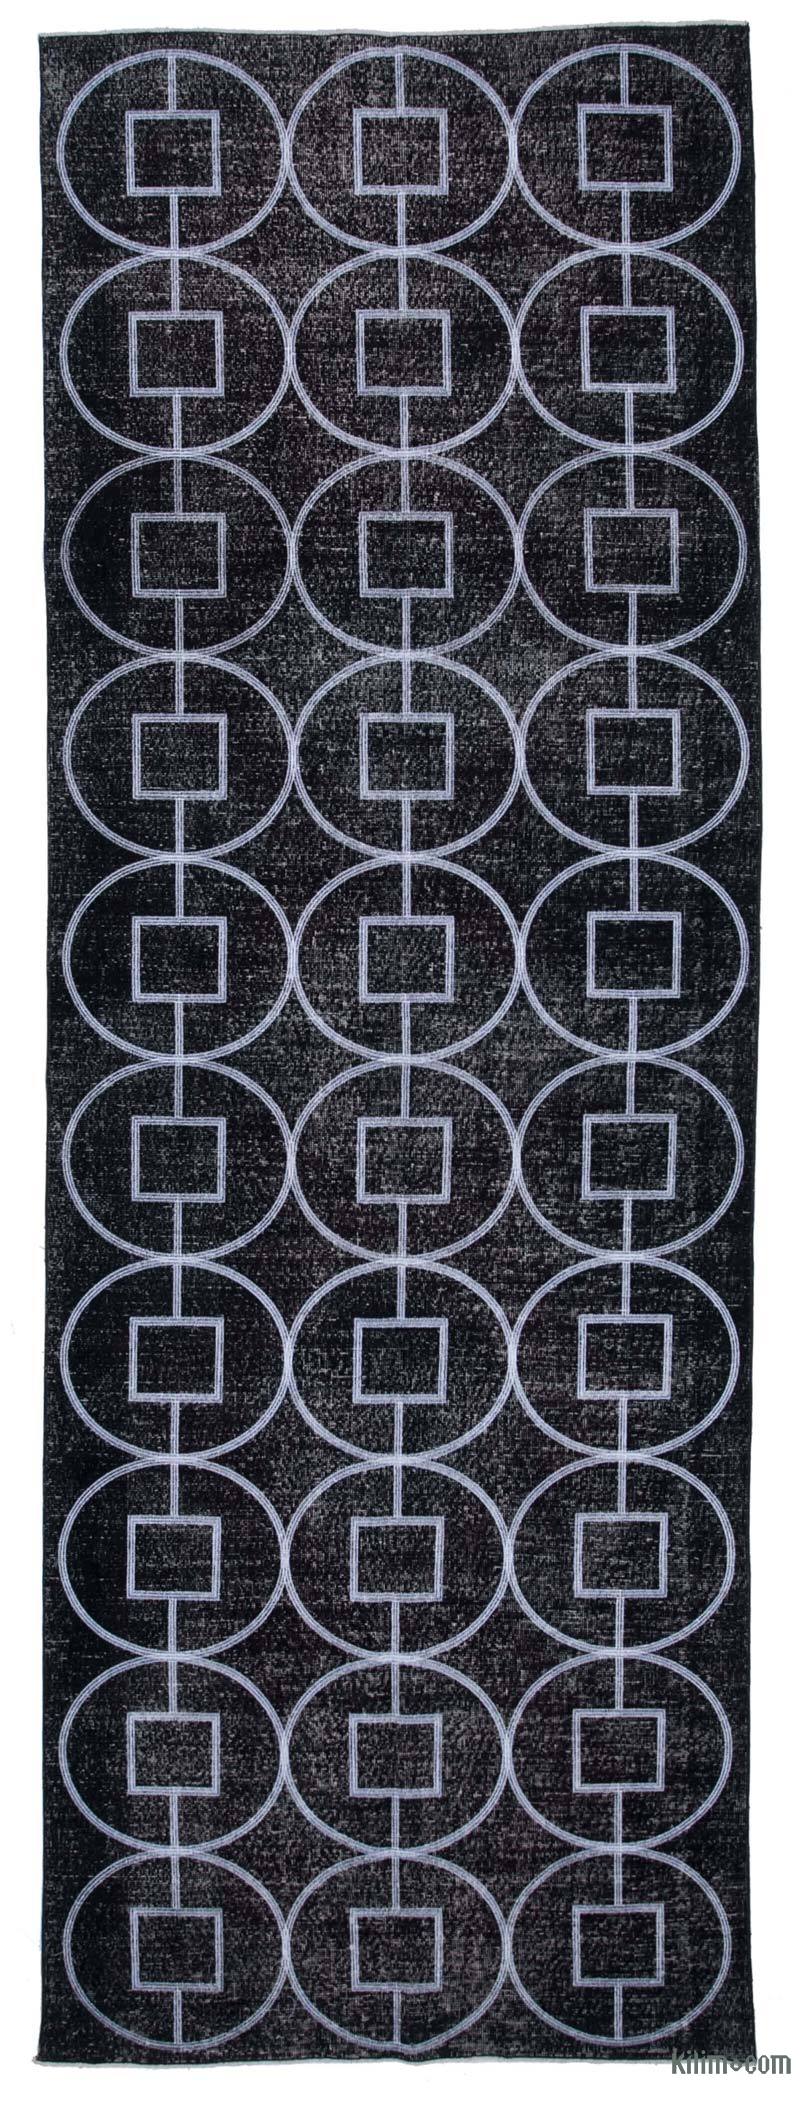 Siyah İşlemeli ve Boyalı El Dokuma Vintage Halı - 141 cm x 306 cm - K0038719